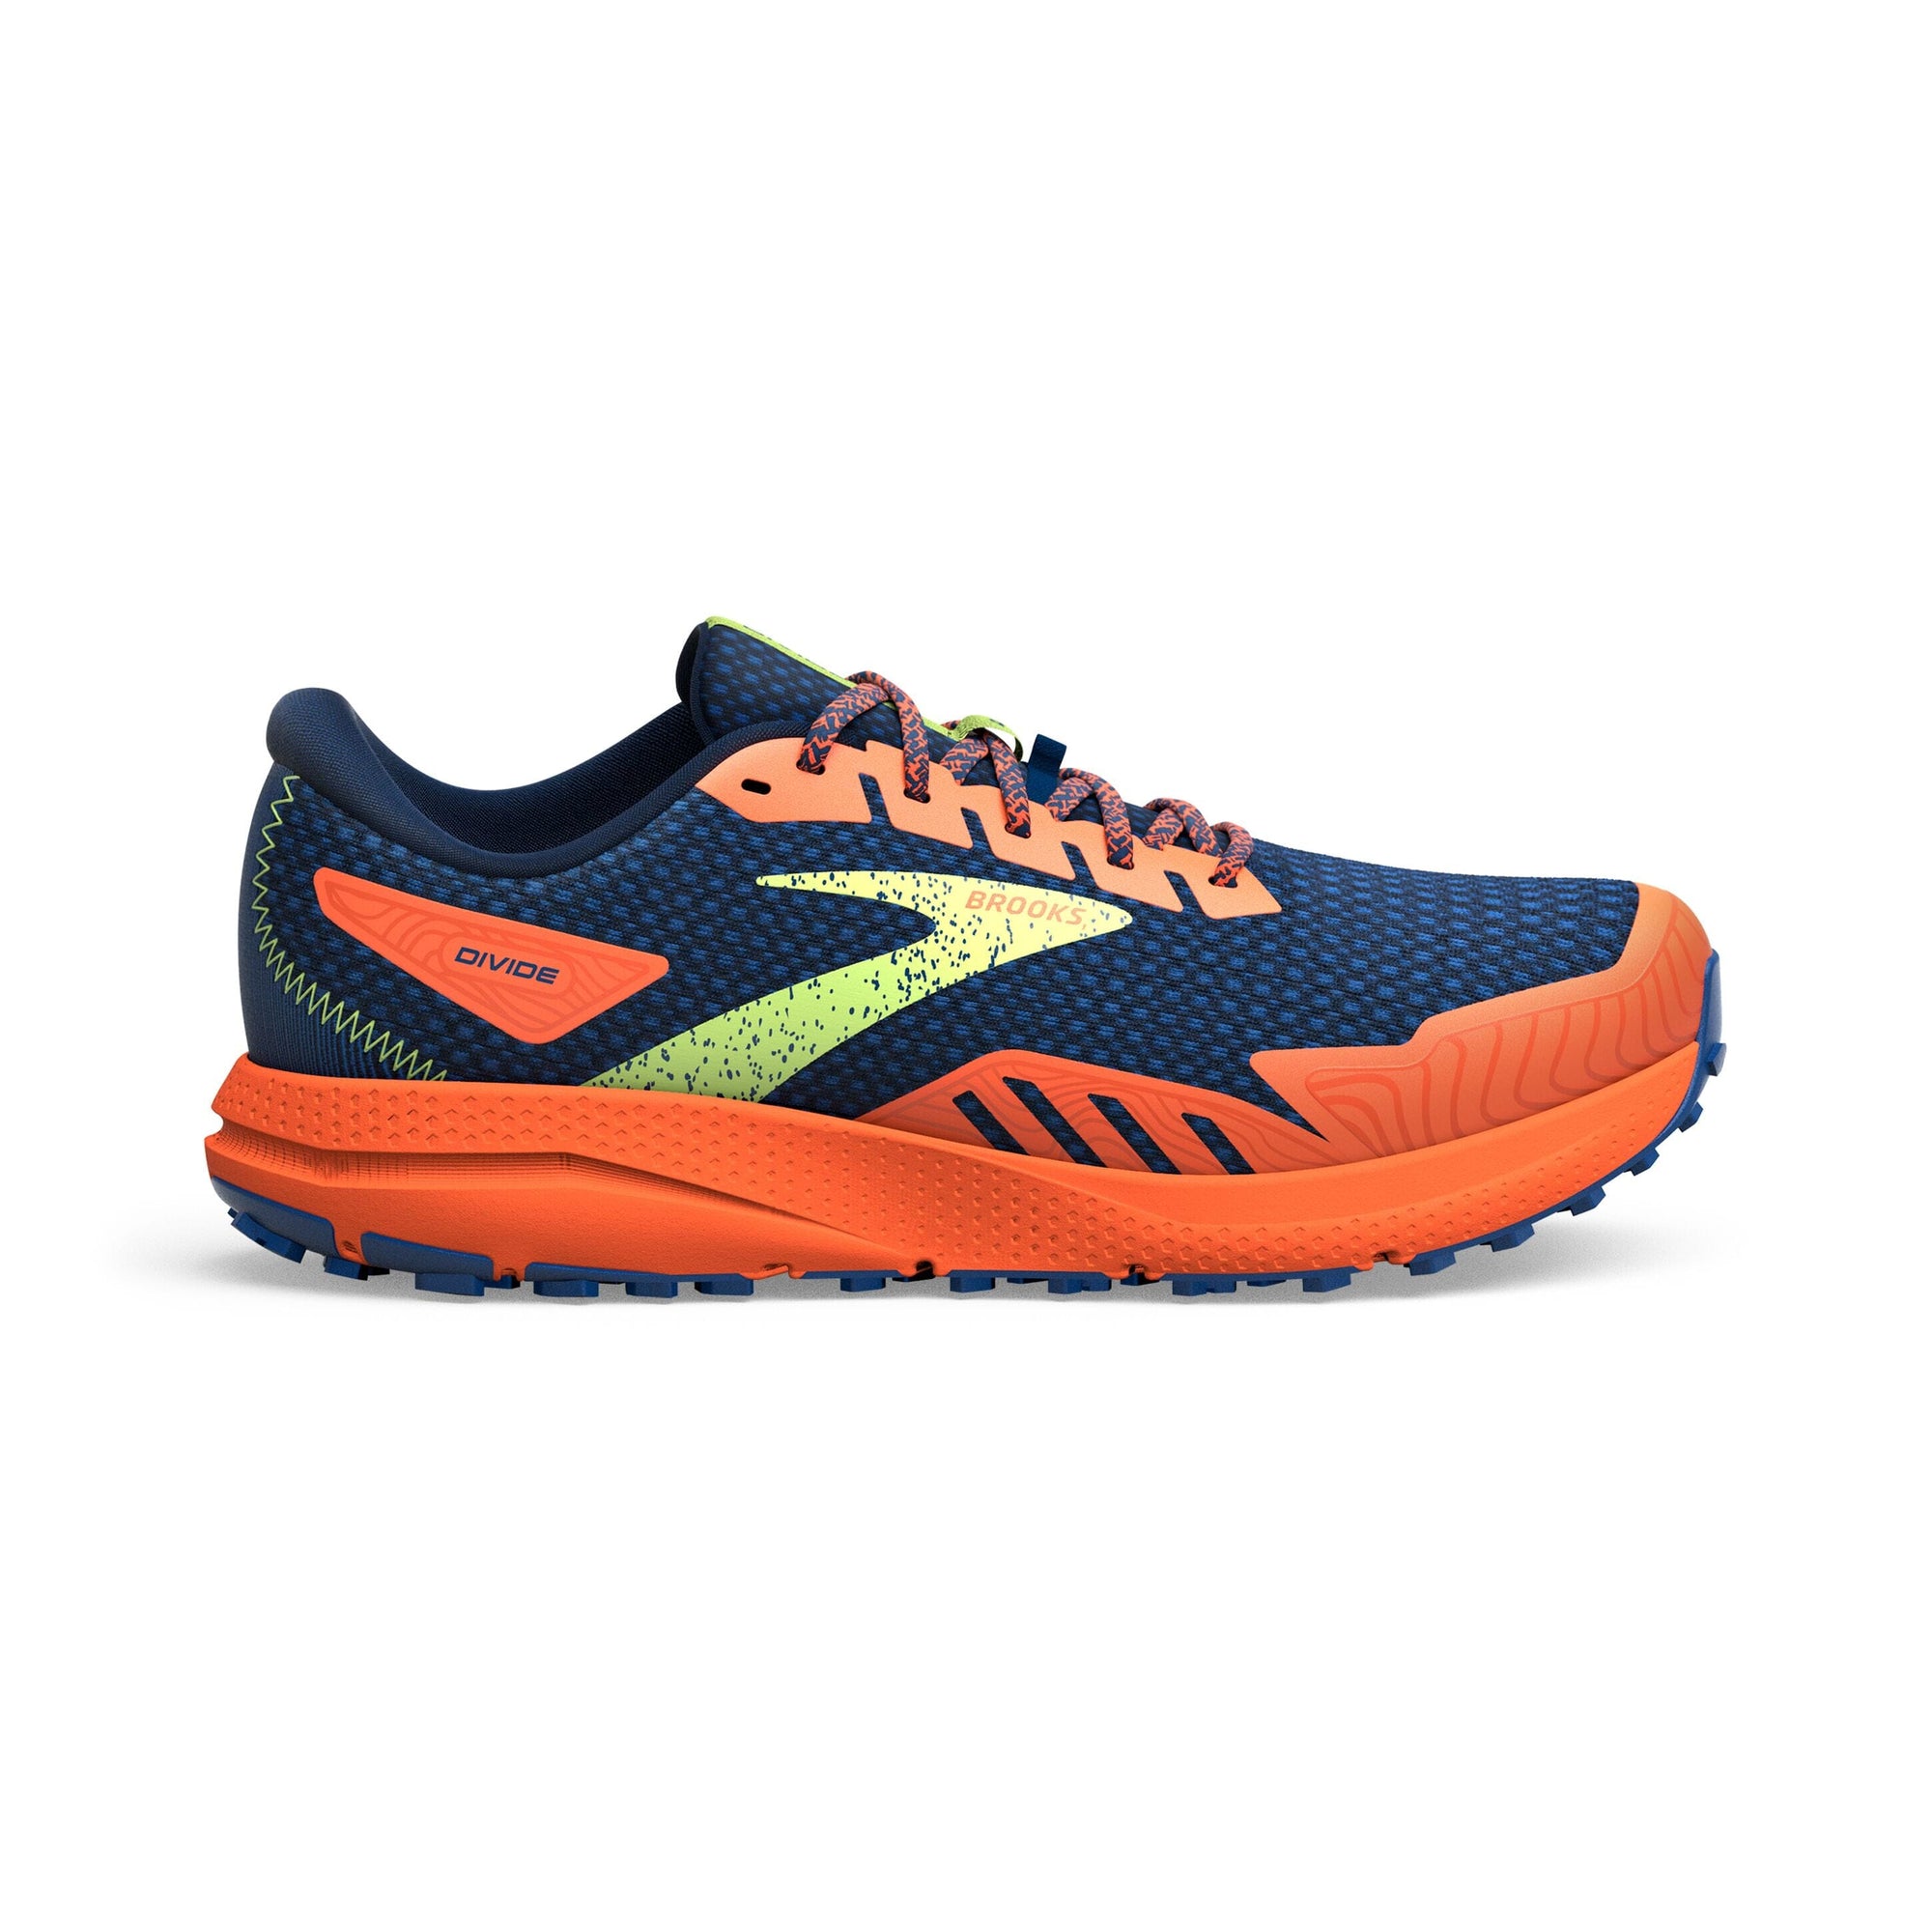 Brooks Men's Divide 4 Trail Running Shoes Navy/Firecracker/Sharp Green US 9.5 